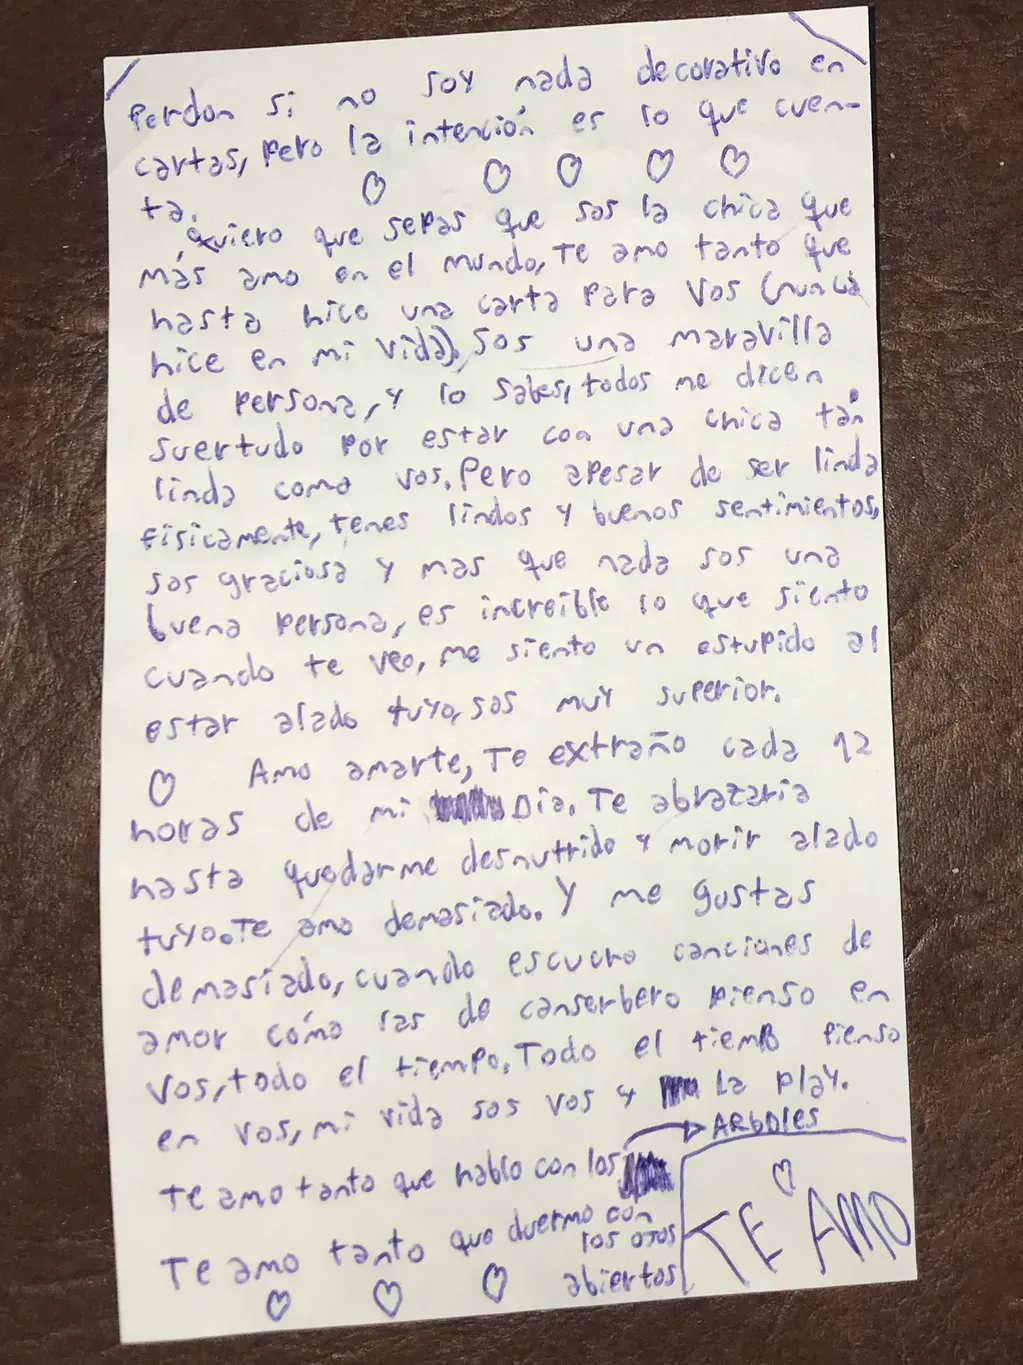 El pequeño le regaló la carta a su novia junto a "papas de jamón serrano", sus favoritas. Foto: Twitter